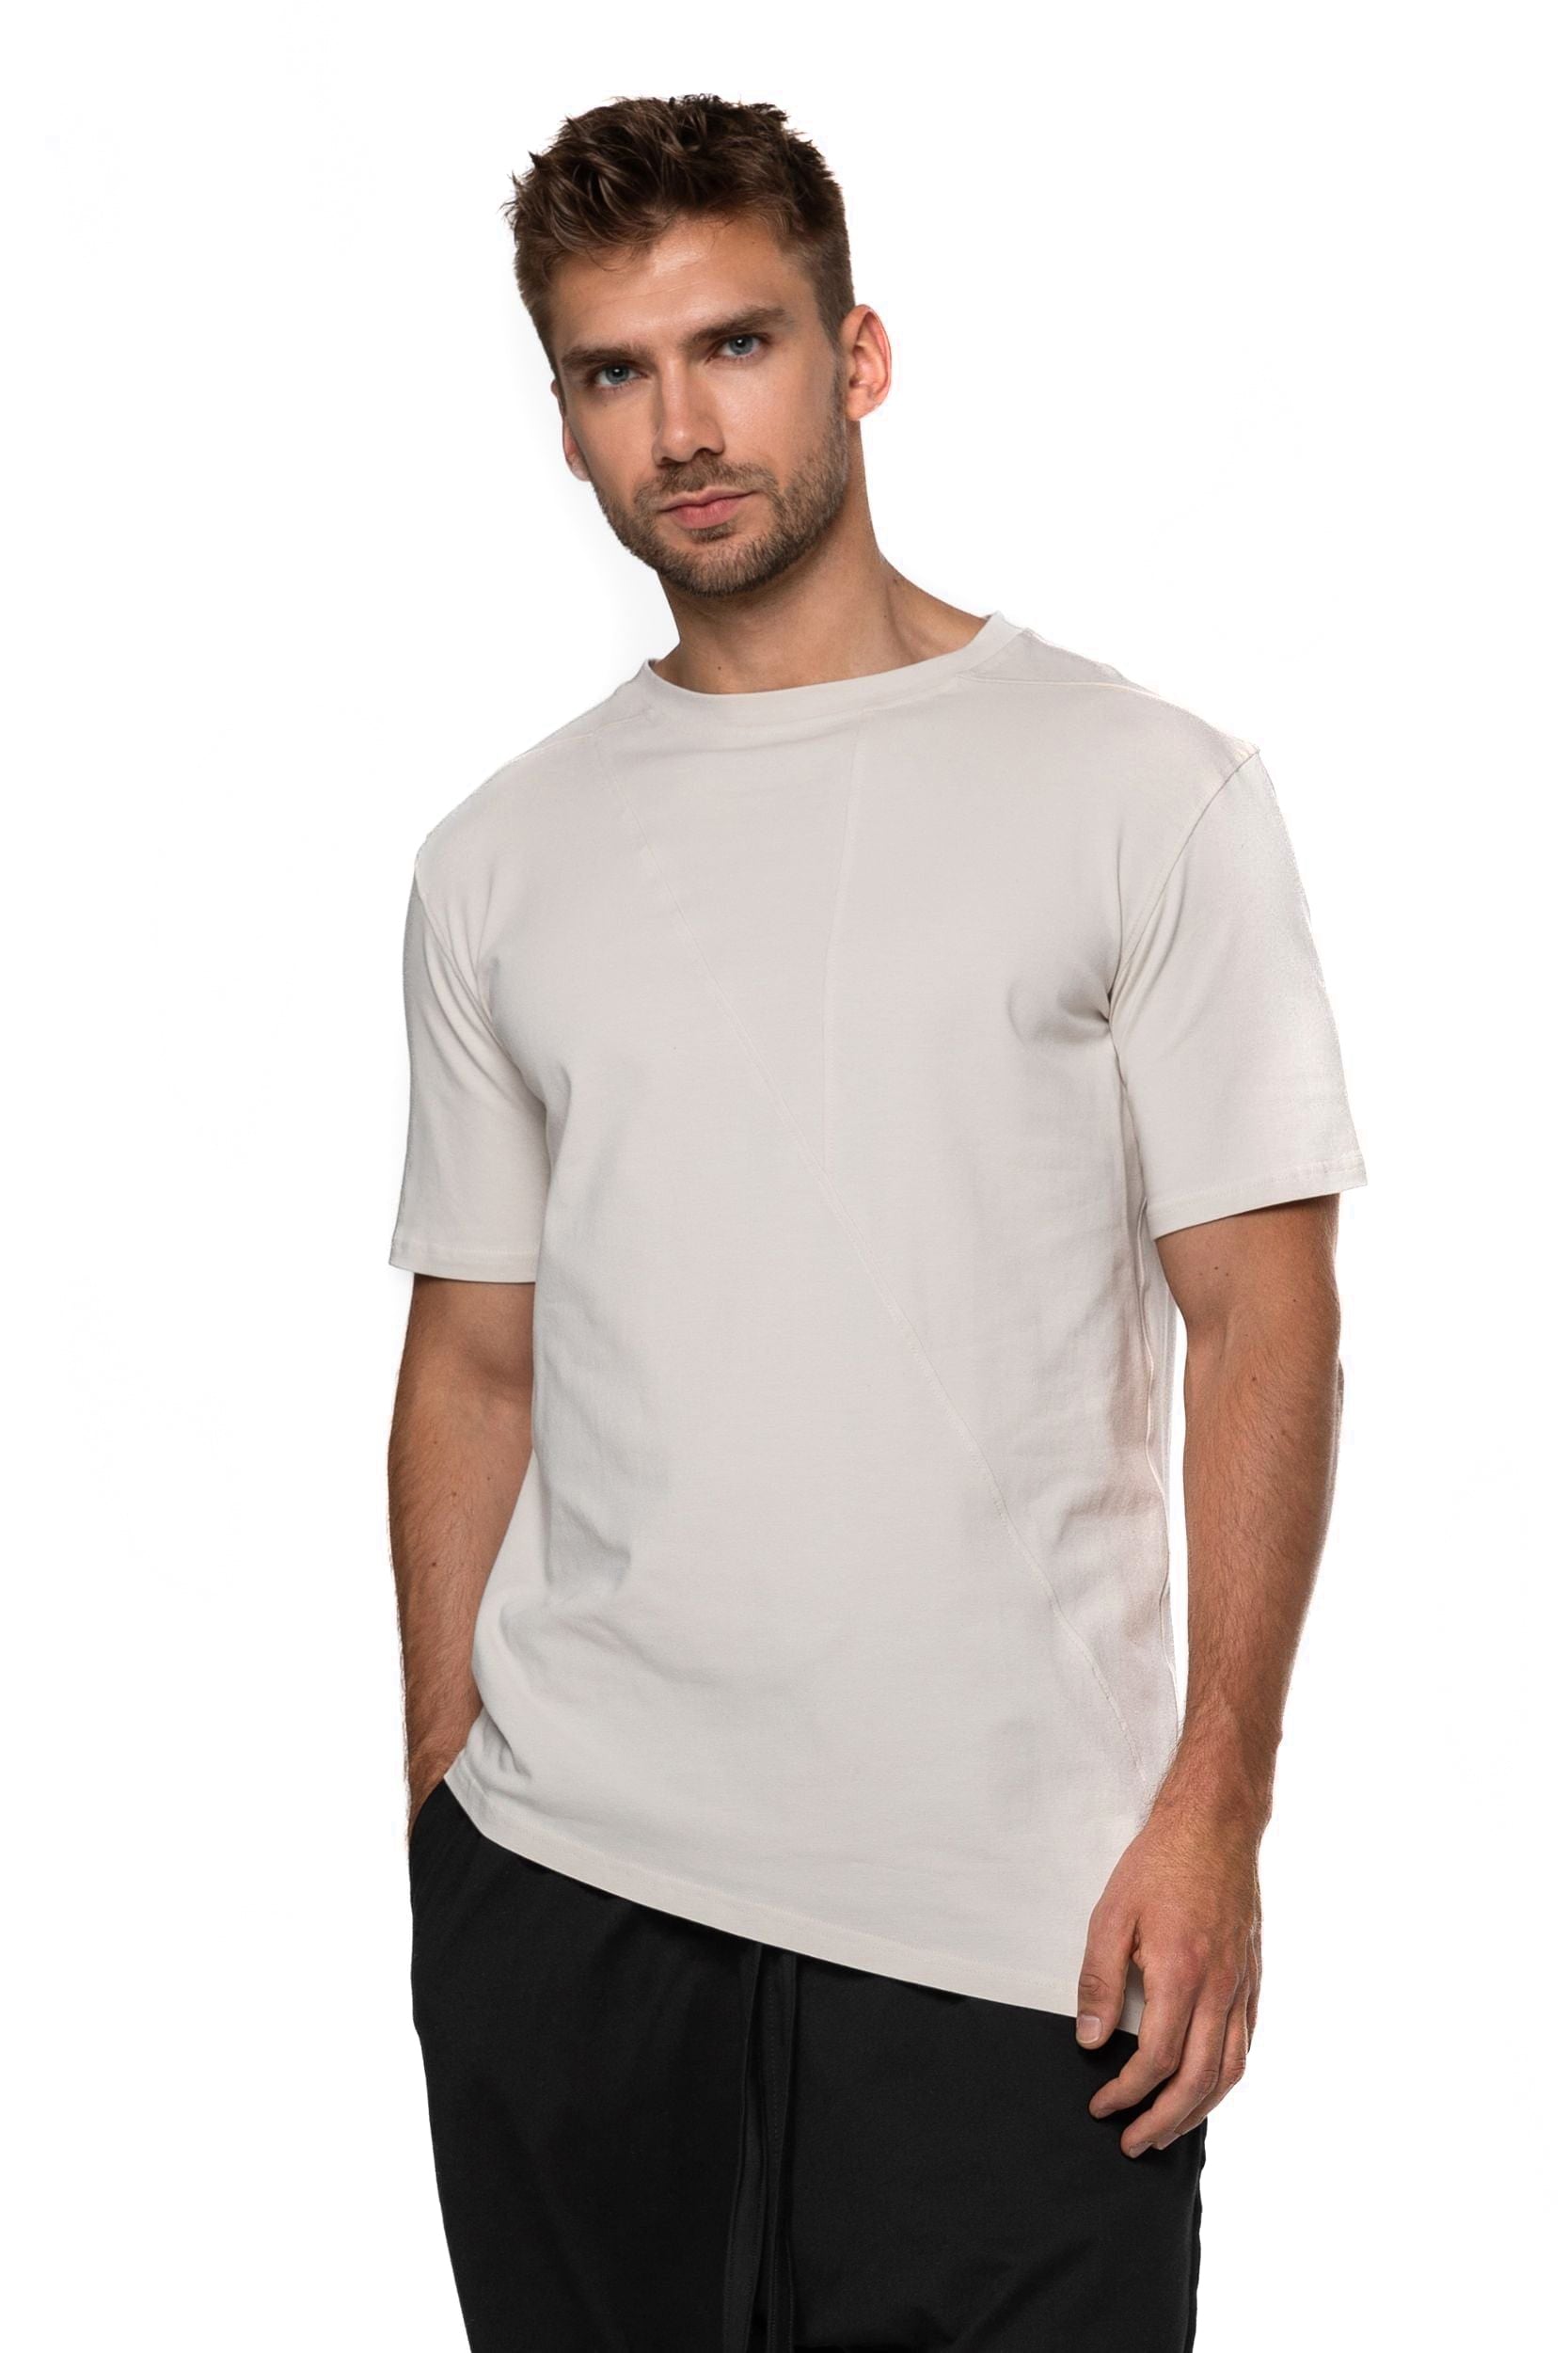 Lightweight asymmetric T-shirt